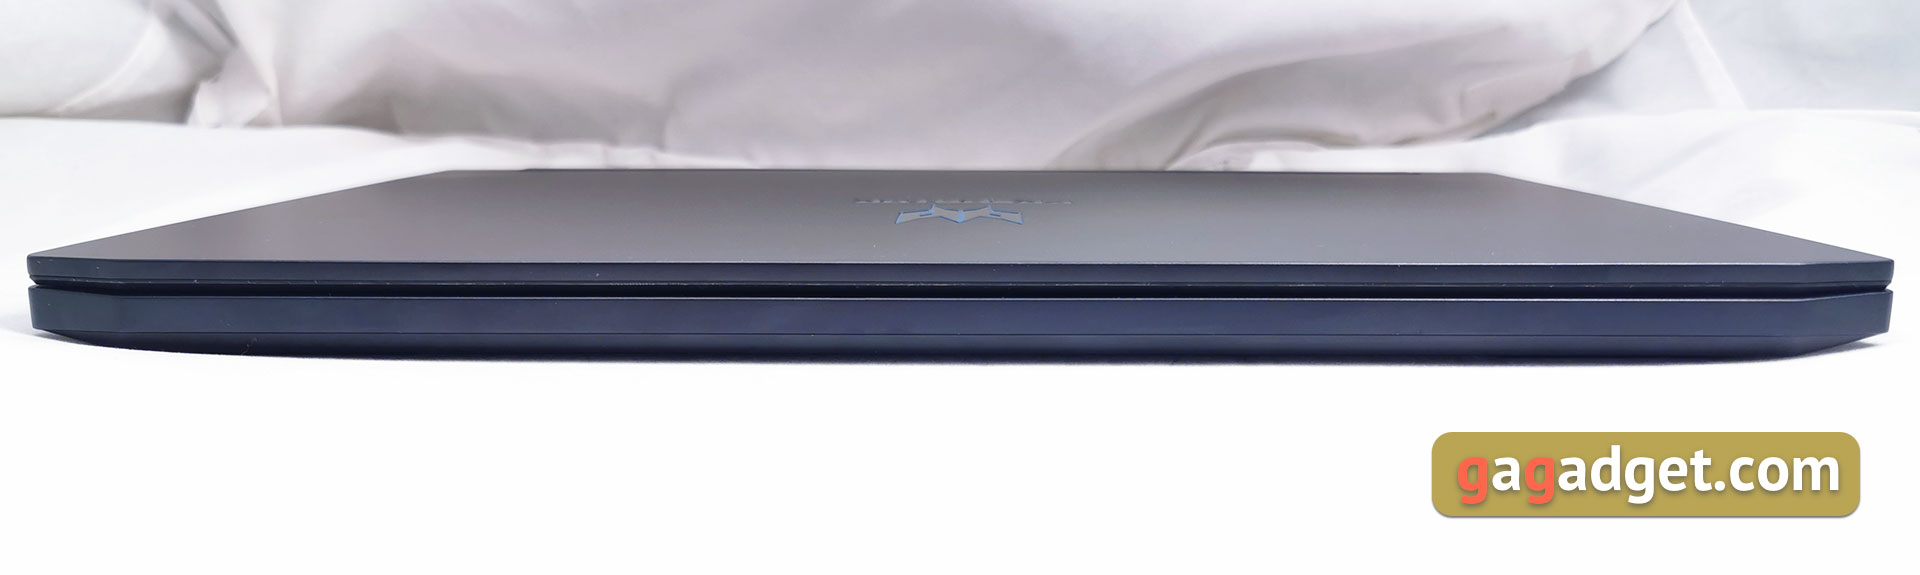 Обзор Acer Predator Triton 500: игровой ноутбук с RTX 2080 Max-Q в компактном лёгком корпусе-8